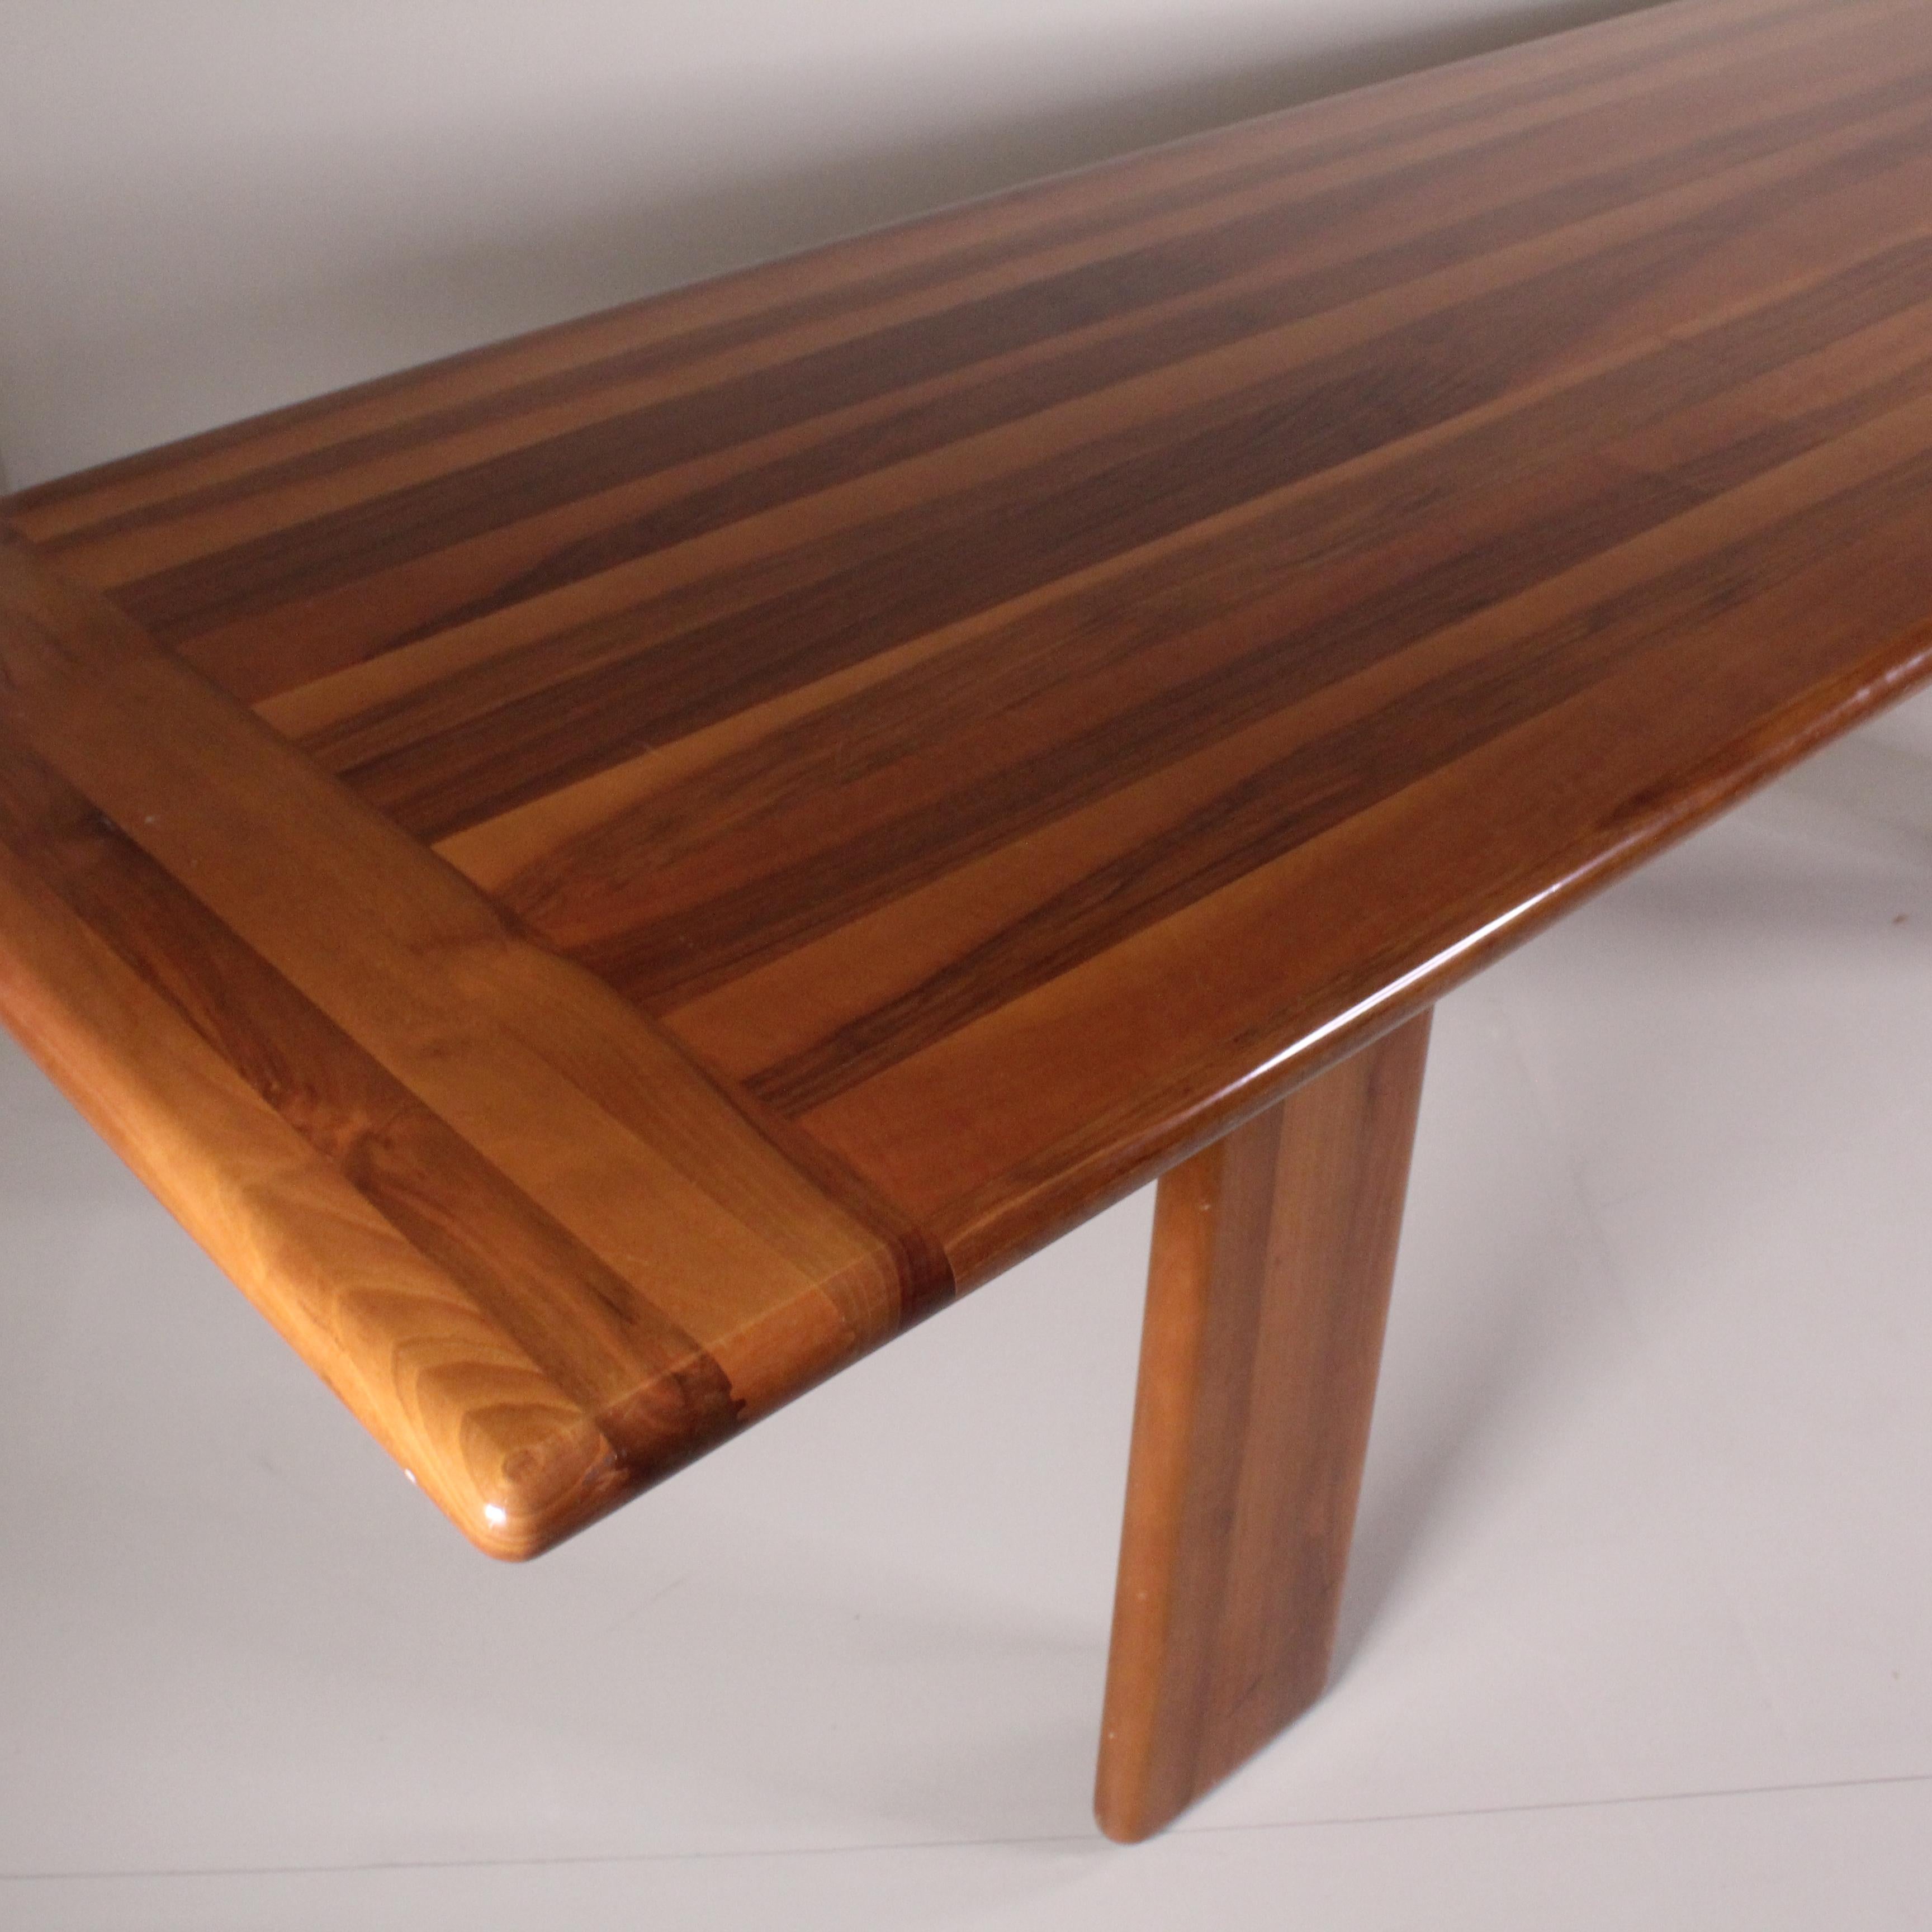 Dieser von Mario Marenco für MobilGirgi entworfene Holztisch ist eine Ikone der 1960er Jahre und verkörpert den Geist dieser Zeit. Dieser Tisch wird mit handwerklichem Geschick und hochwertigen Materialien hergestellt und zeichnet sich durch klare